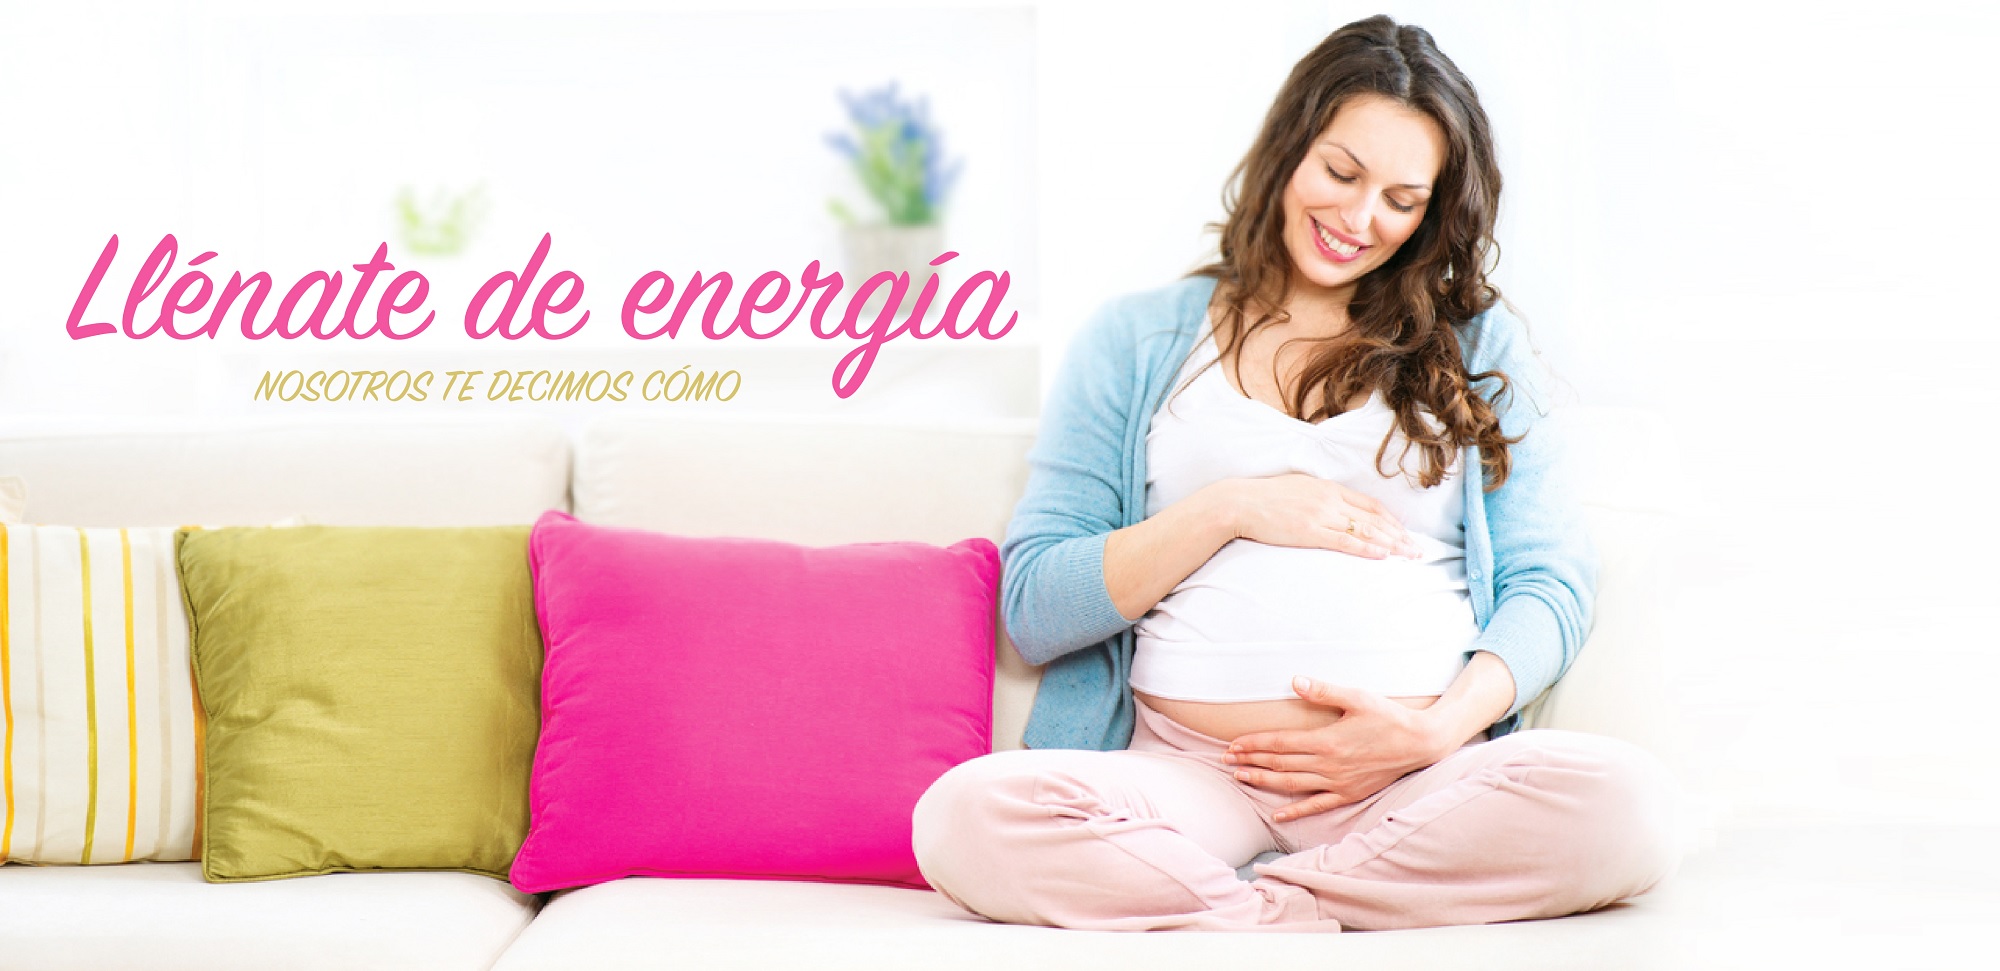 ¿Sabes cómo tener energía durante tu embarazo?